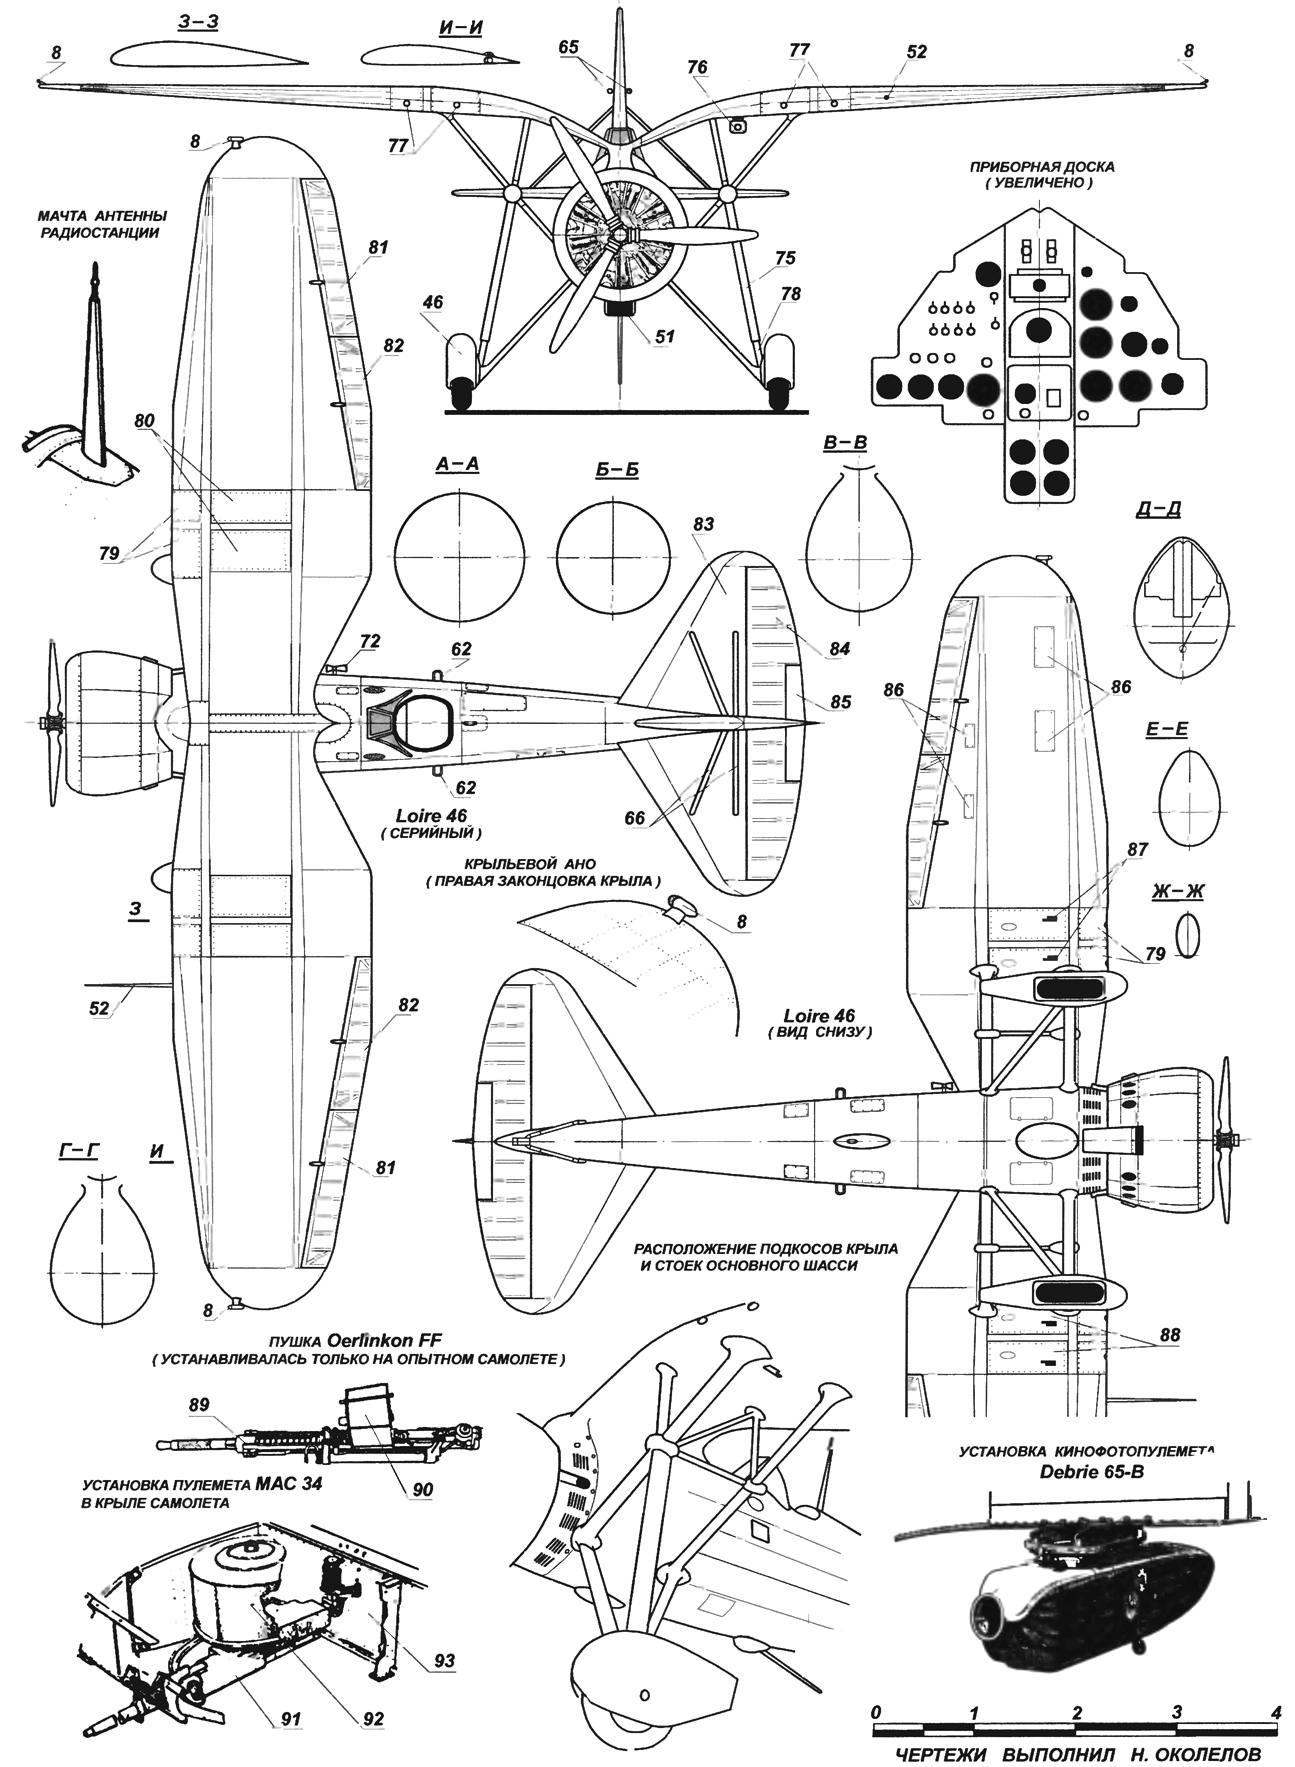 Одноместный подкосный истребитель-моноплан Loire 46